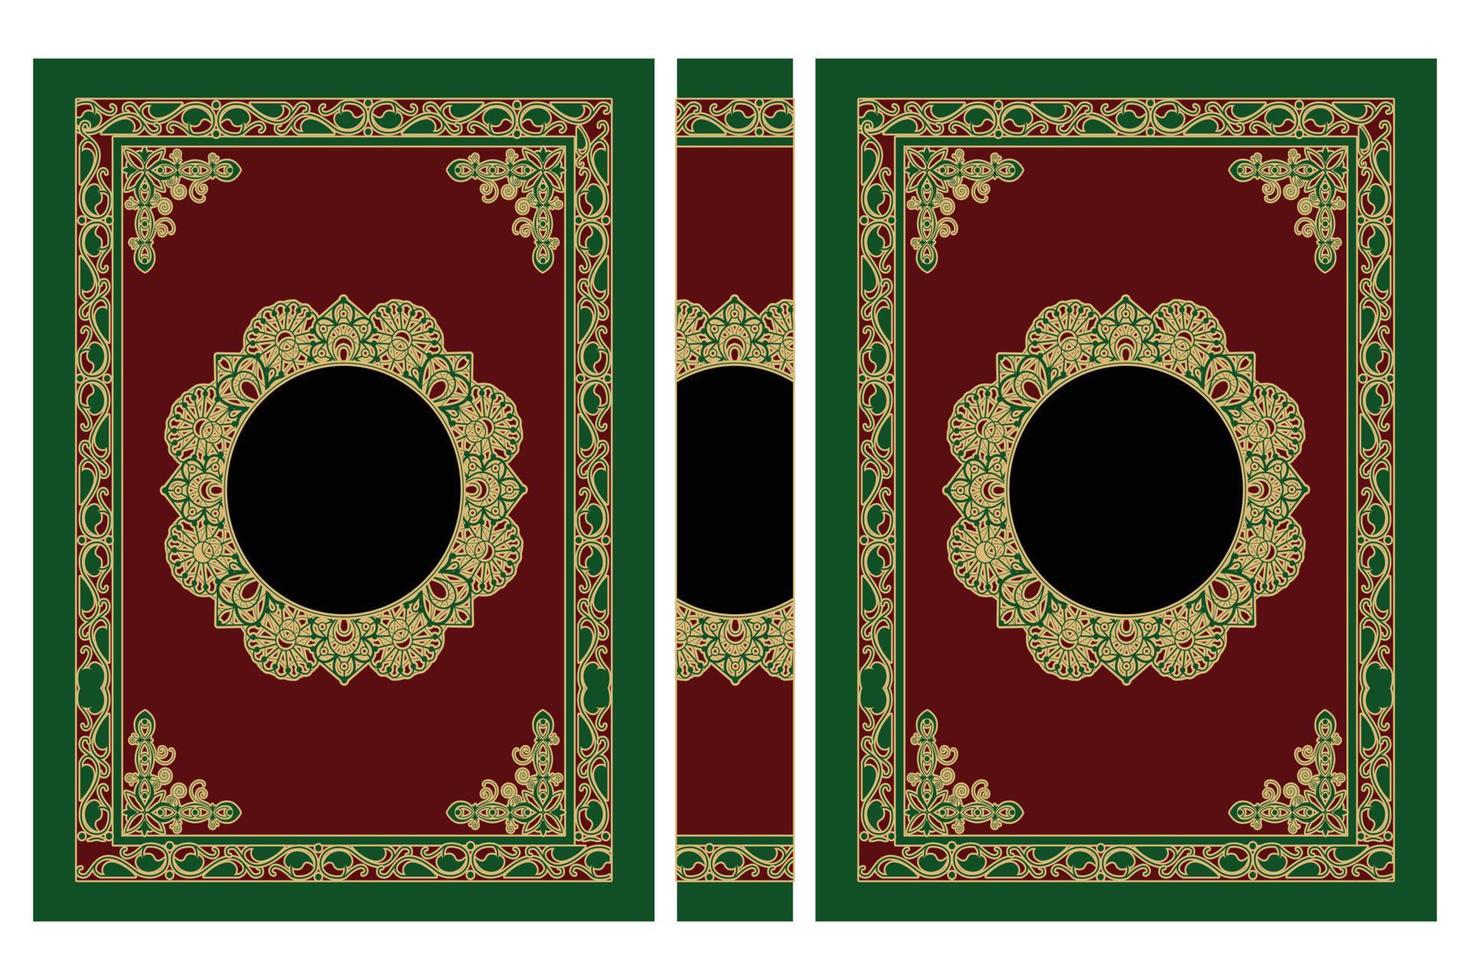 la conception de typographie de couverture de livre arabe classique est créée avec un bel ornement islamique vecteur